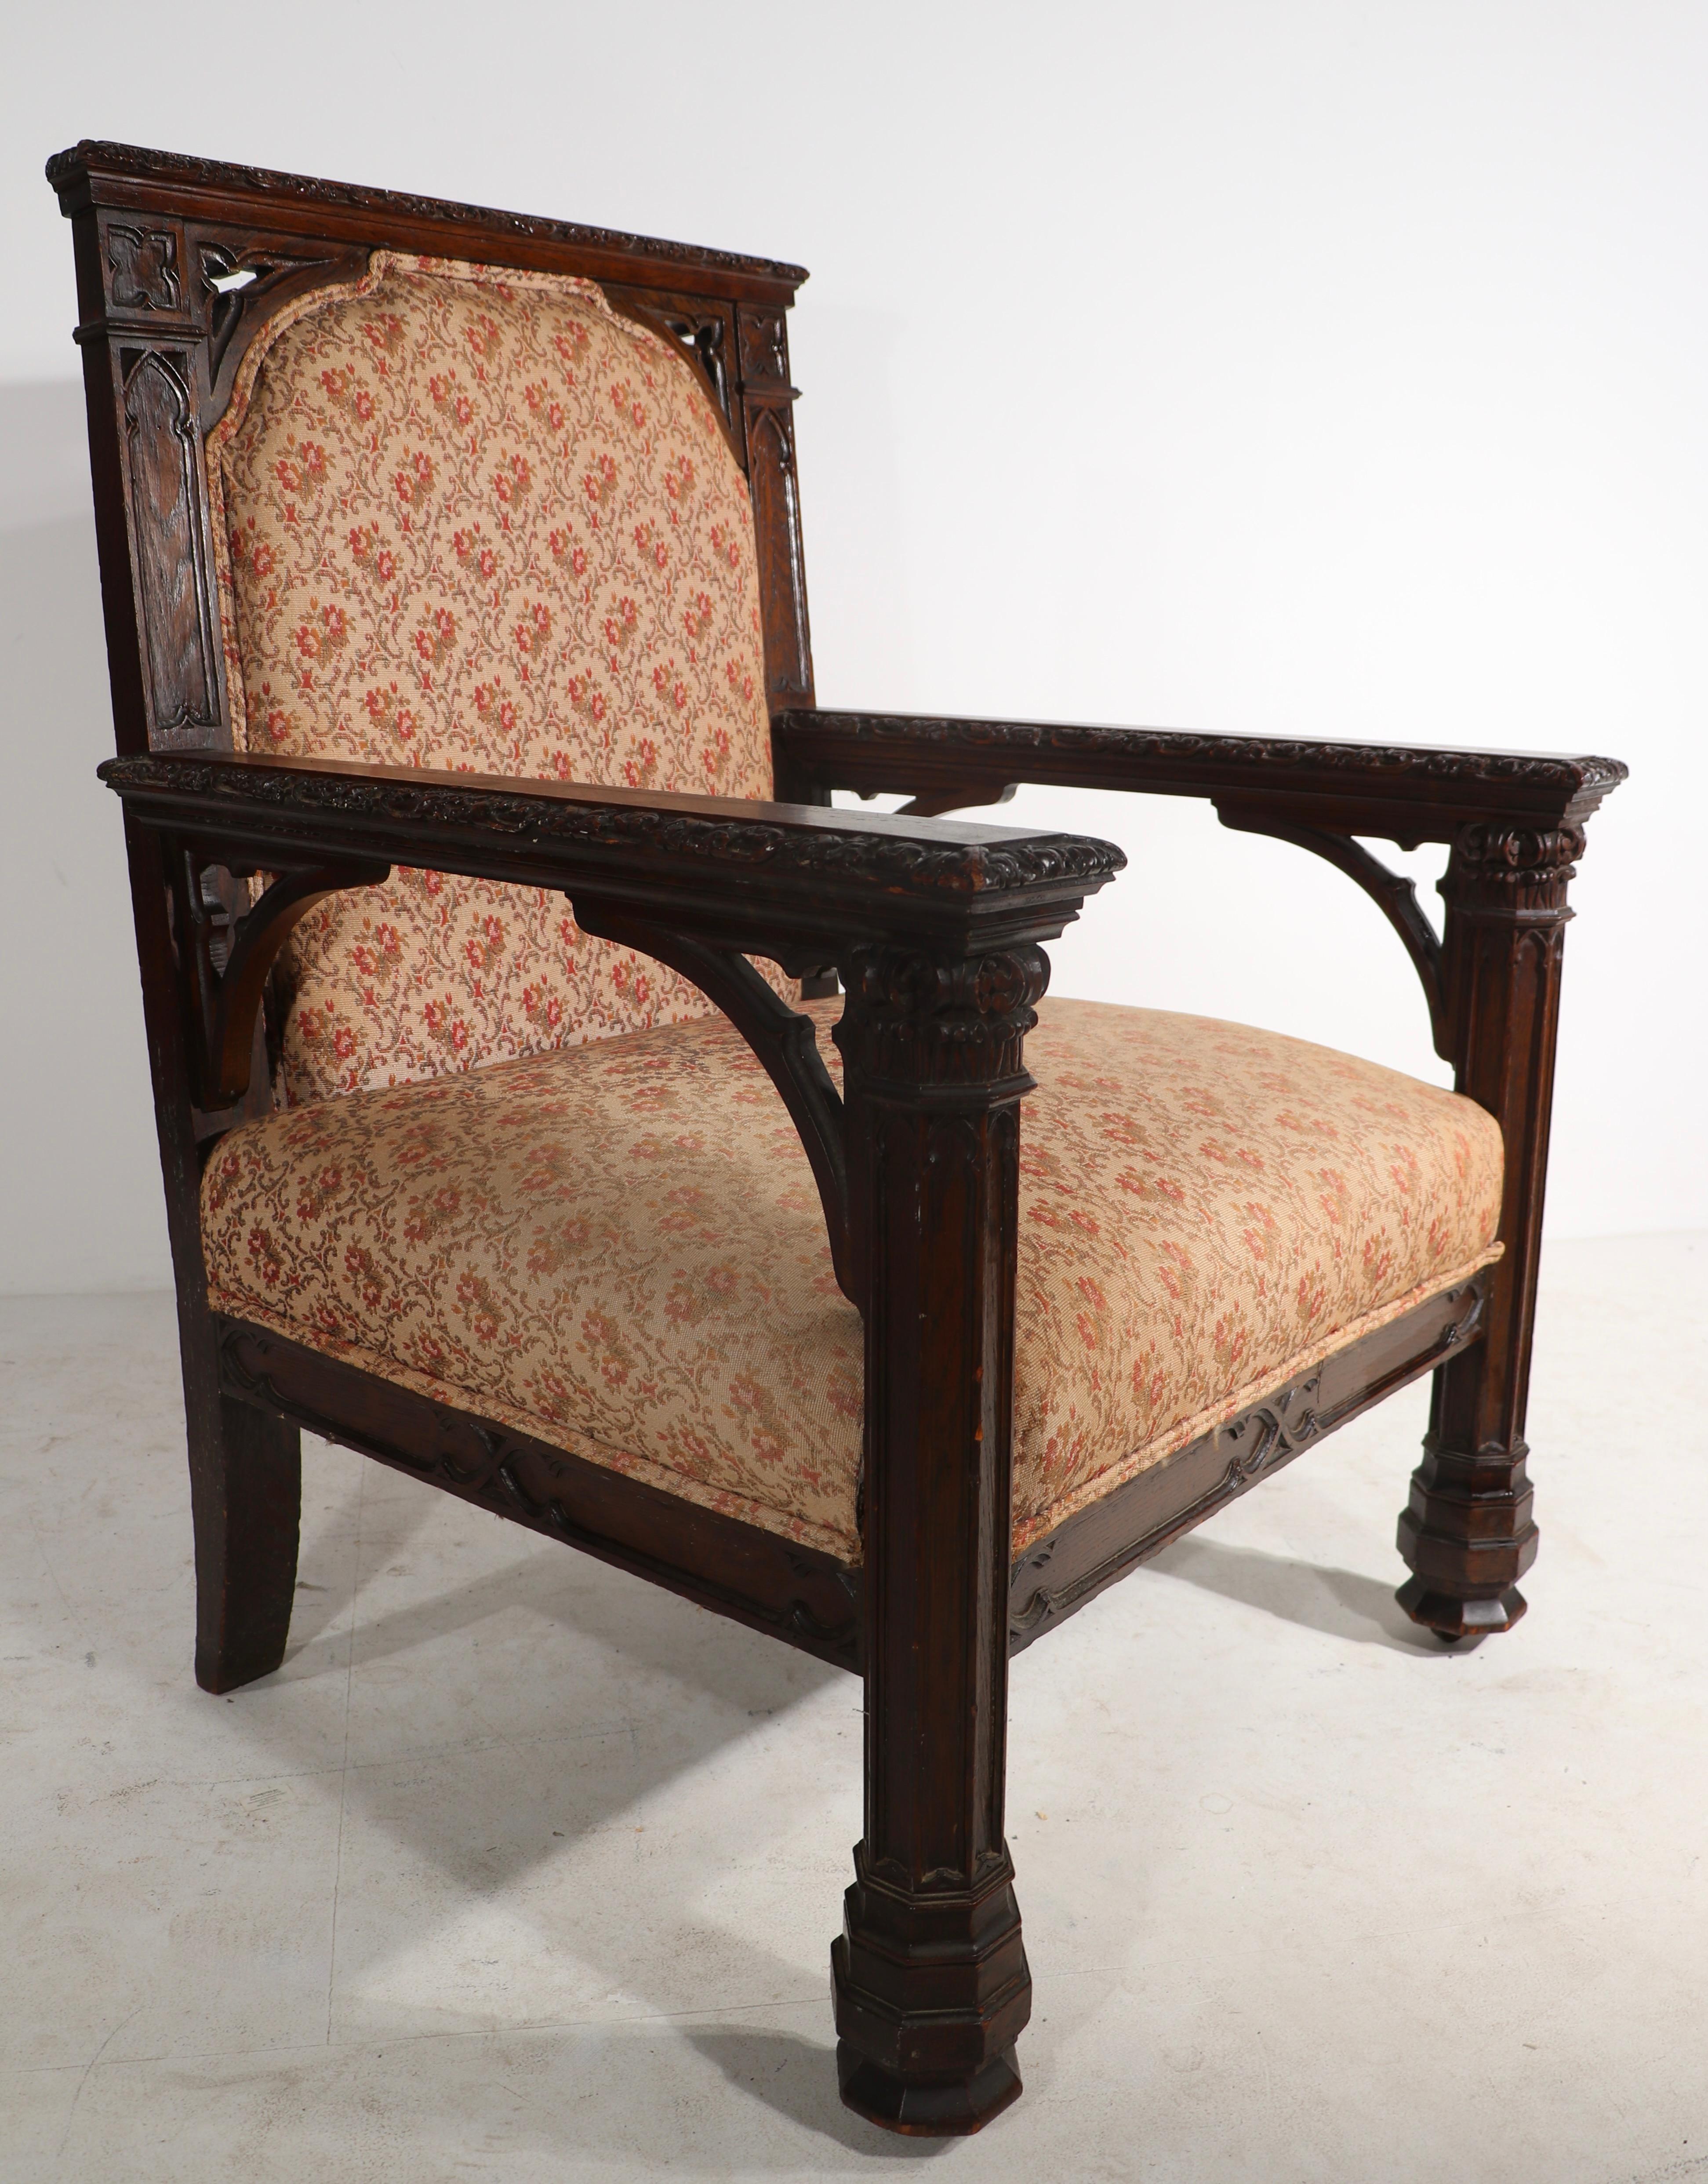 Fabuleux fauteuil de style gothique révial en chêne sculpté, avec assise et dossier (re-tapissés). 
Cet exemplaire est en très bon état d'origine et ne présente qu'une légère usure cosmétique normale et cohérente avec l'âge.
Bois sculpté, cadre